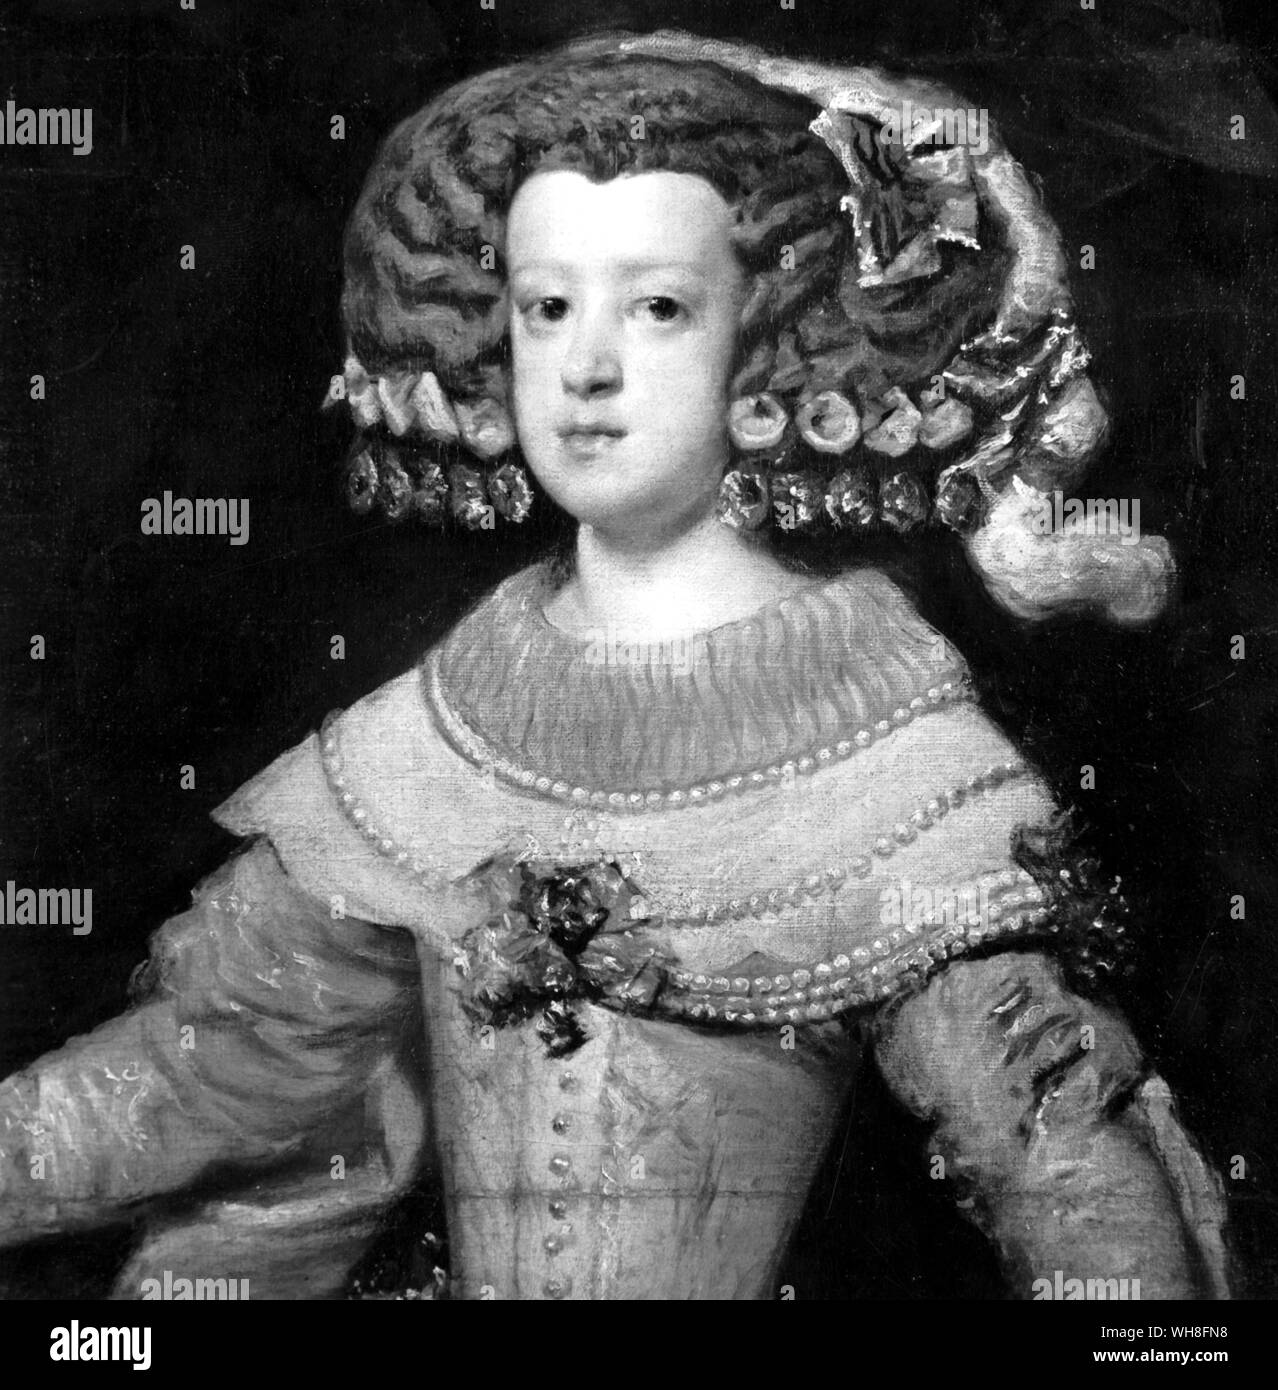 Marie Therese comme Infante par Diego Velázquez (1599-1660), Painter. Marie-thérèse d'Espagne (Français : Marie Thérèse) (1638-1683), reine consort de France en tant qu'épouse de Louis XIV de France, est né à l'Escorial comme la fille de Philippe IV d'Espagne et d'Elisabeth de France (1602-1644).. . . . . . . Banque D'Images